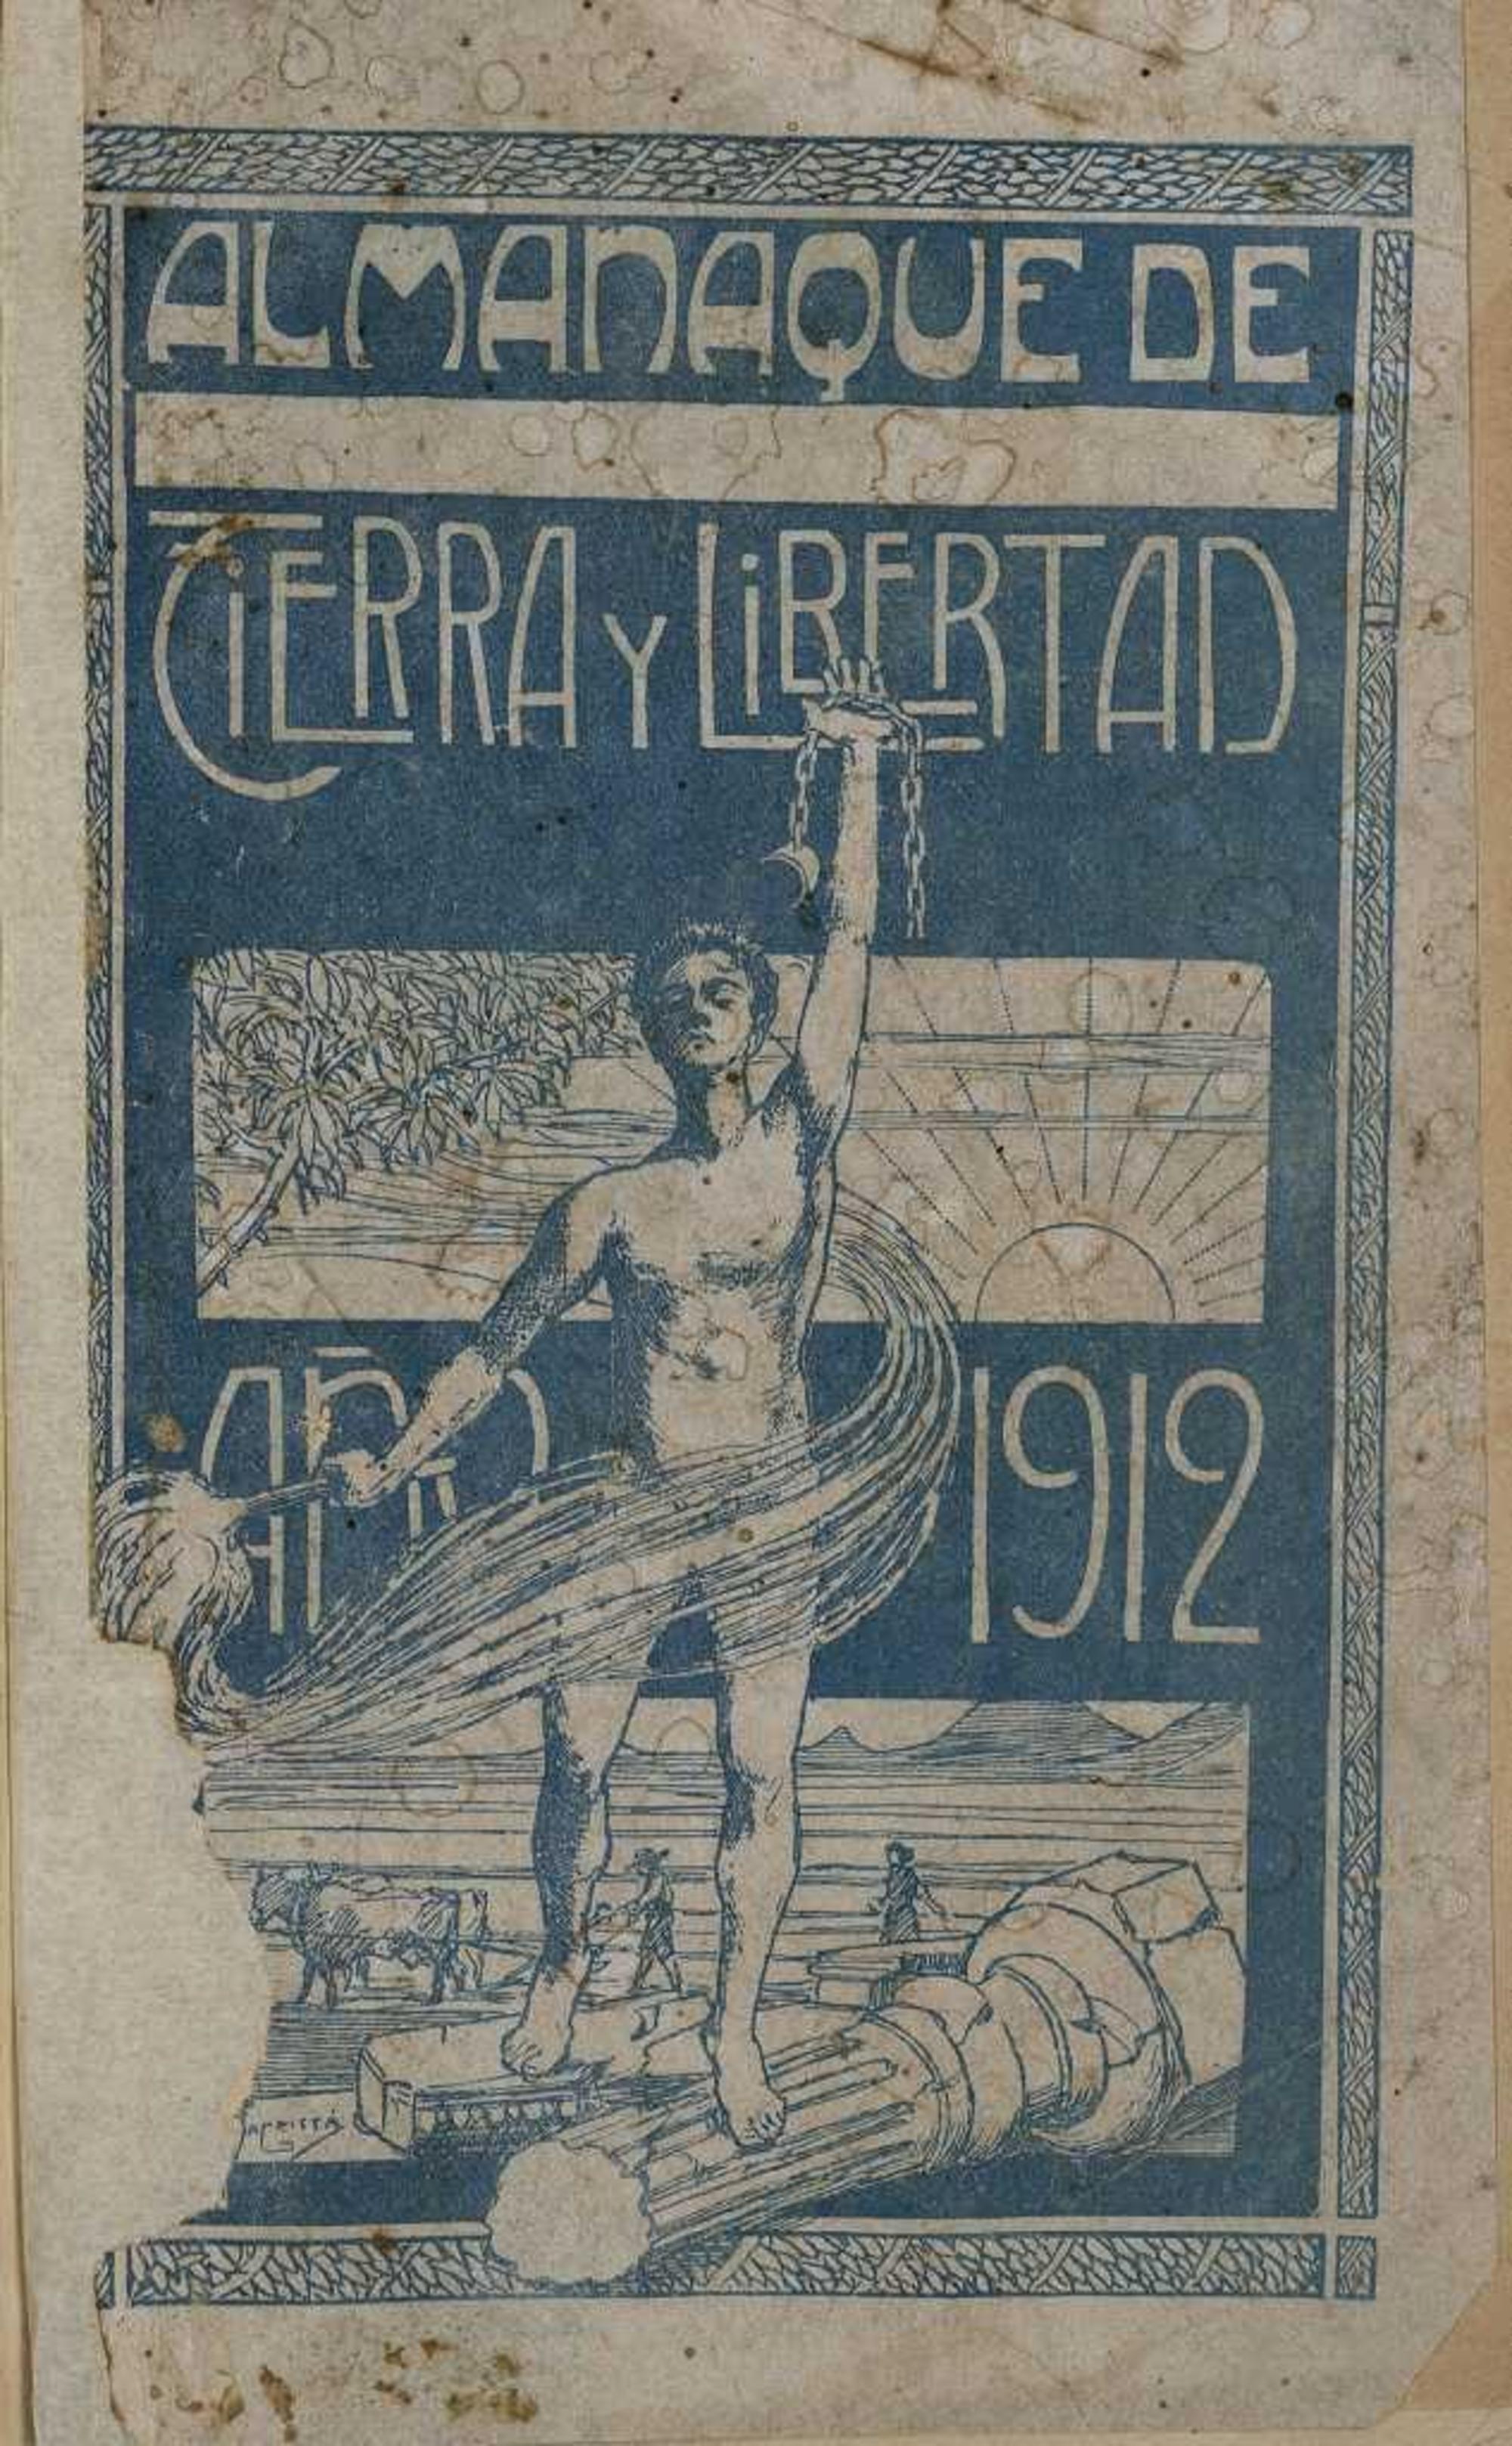 Almanaque Tierra y Libertad 1912